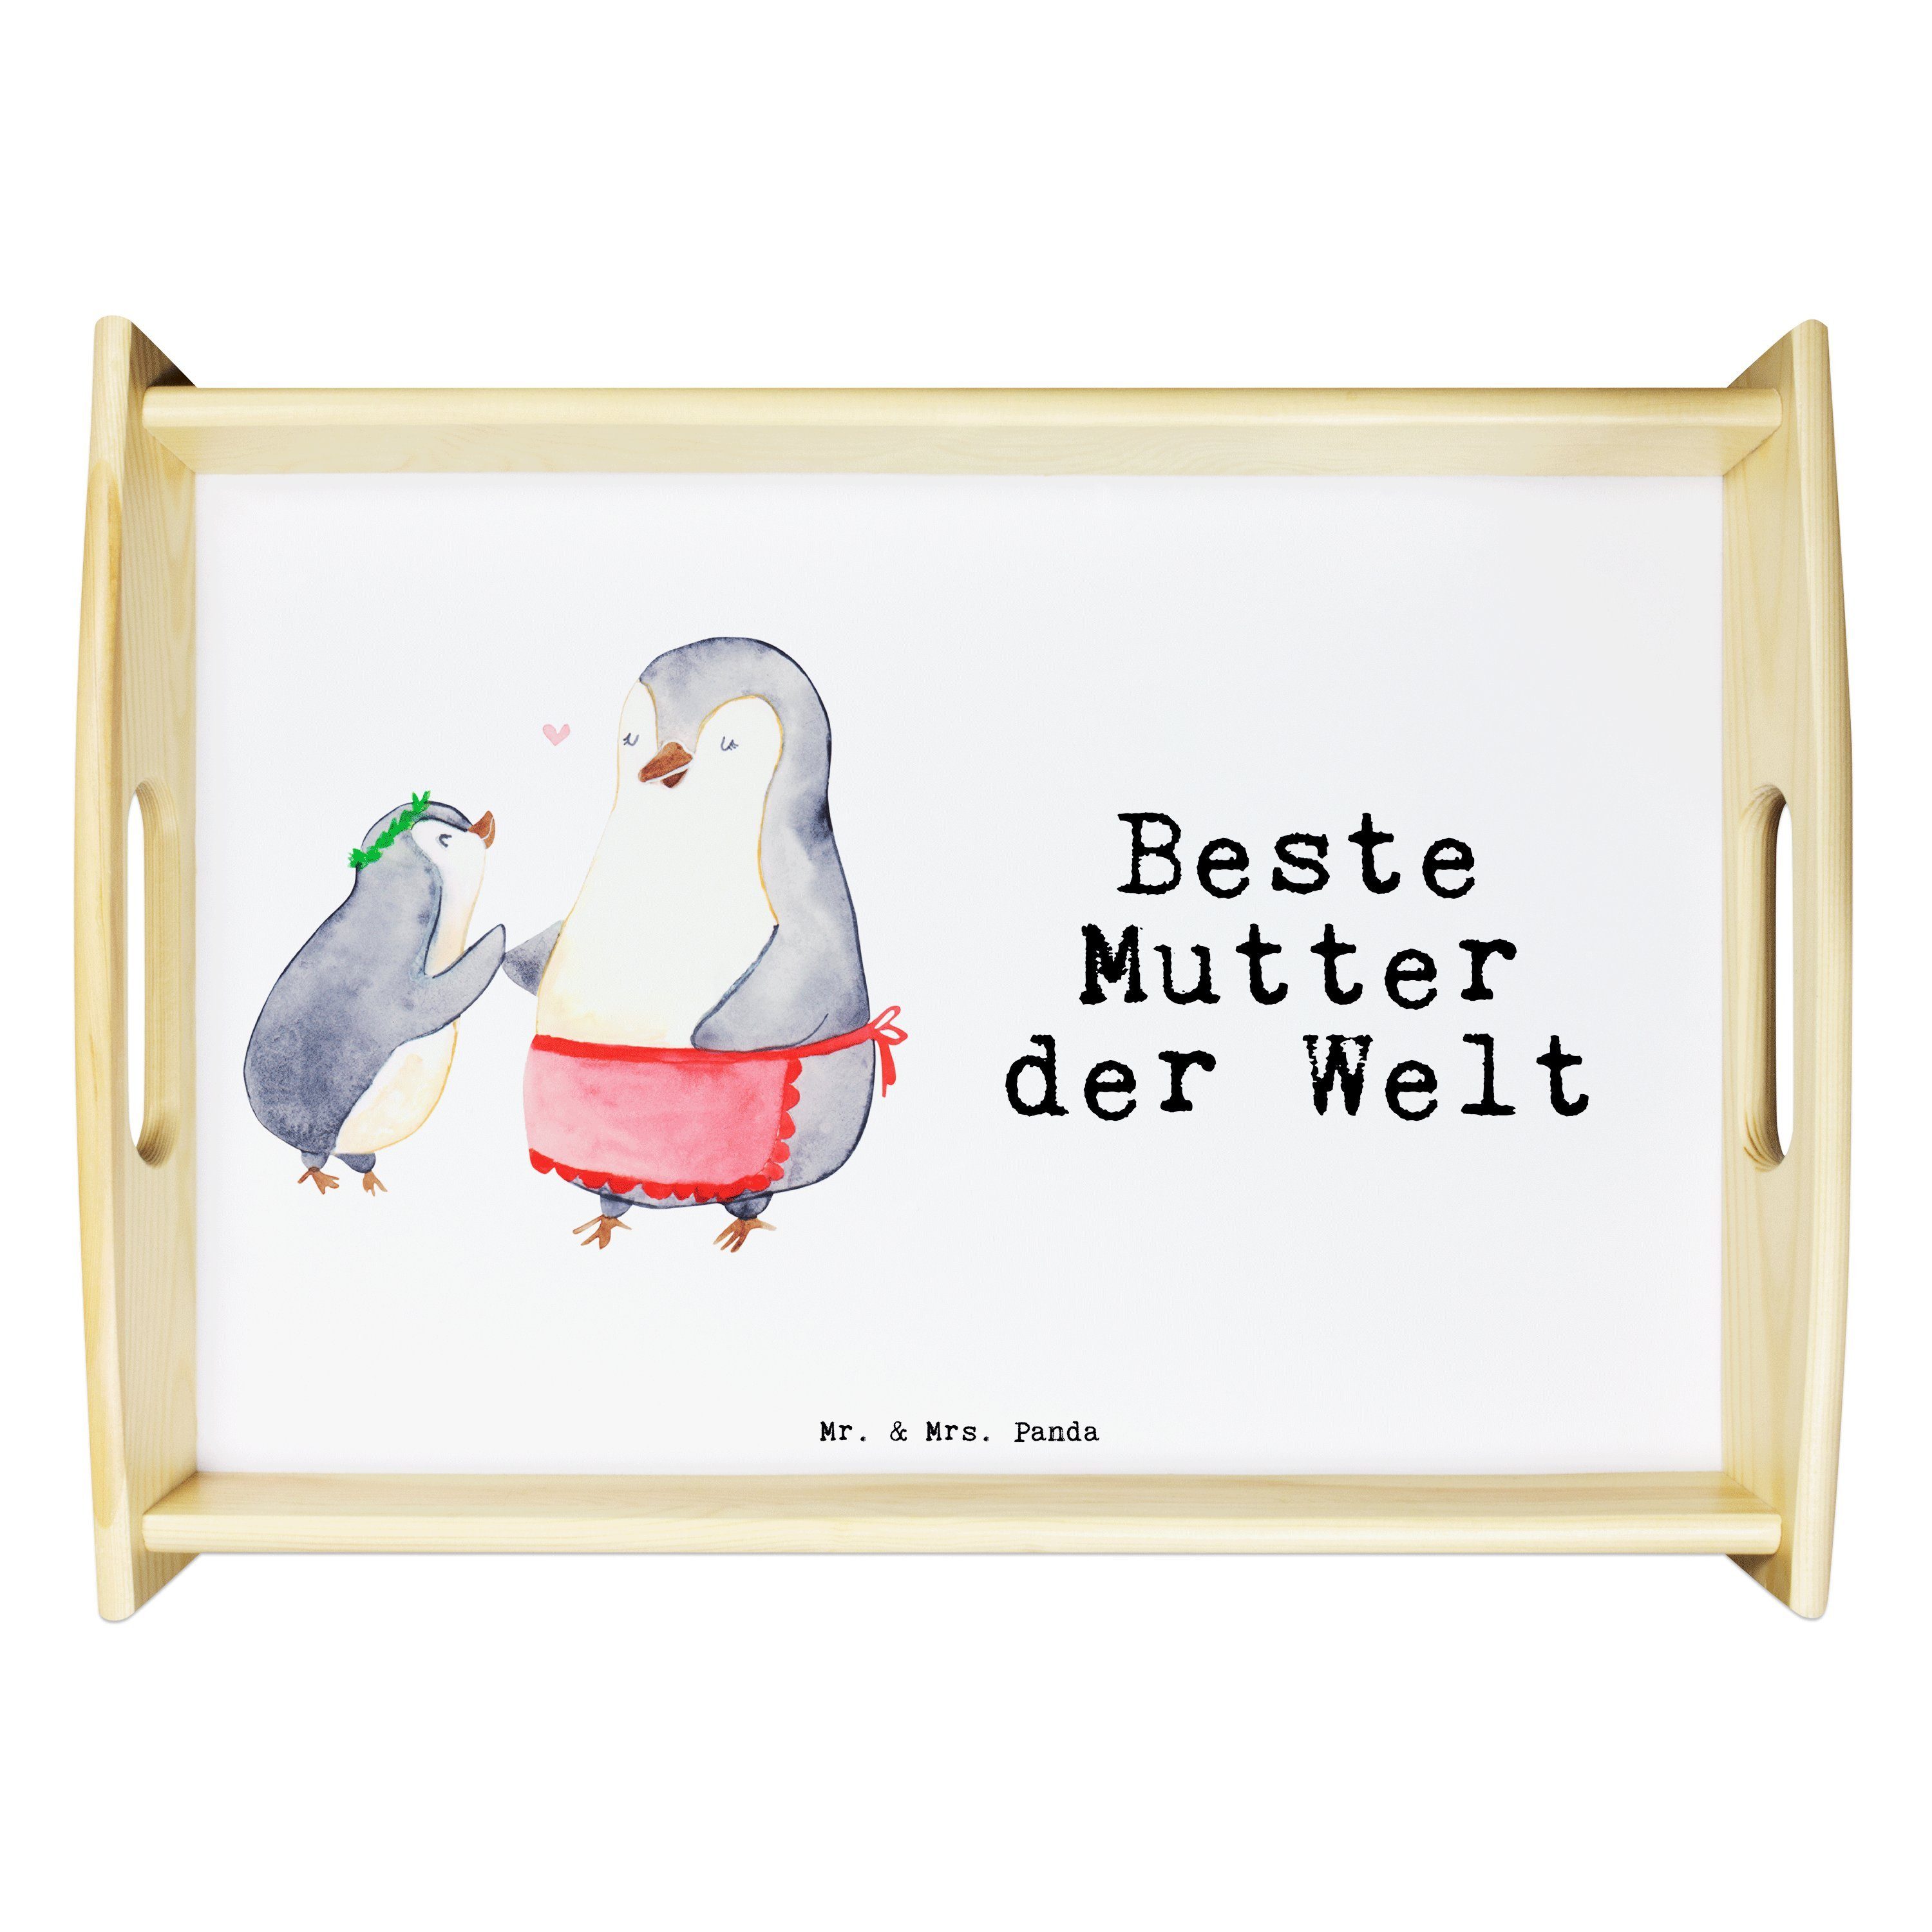 Mr. & Mrs. Panda Pinguin Dekotablett, Beste Mutter Echtholz Weiß Tablett, Geschenk, lasiert, (1-tlg) - der Welt Tablett 